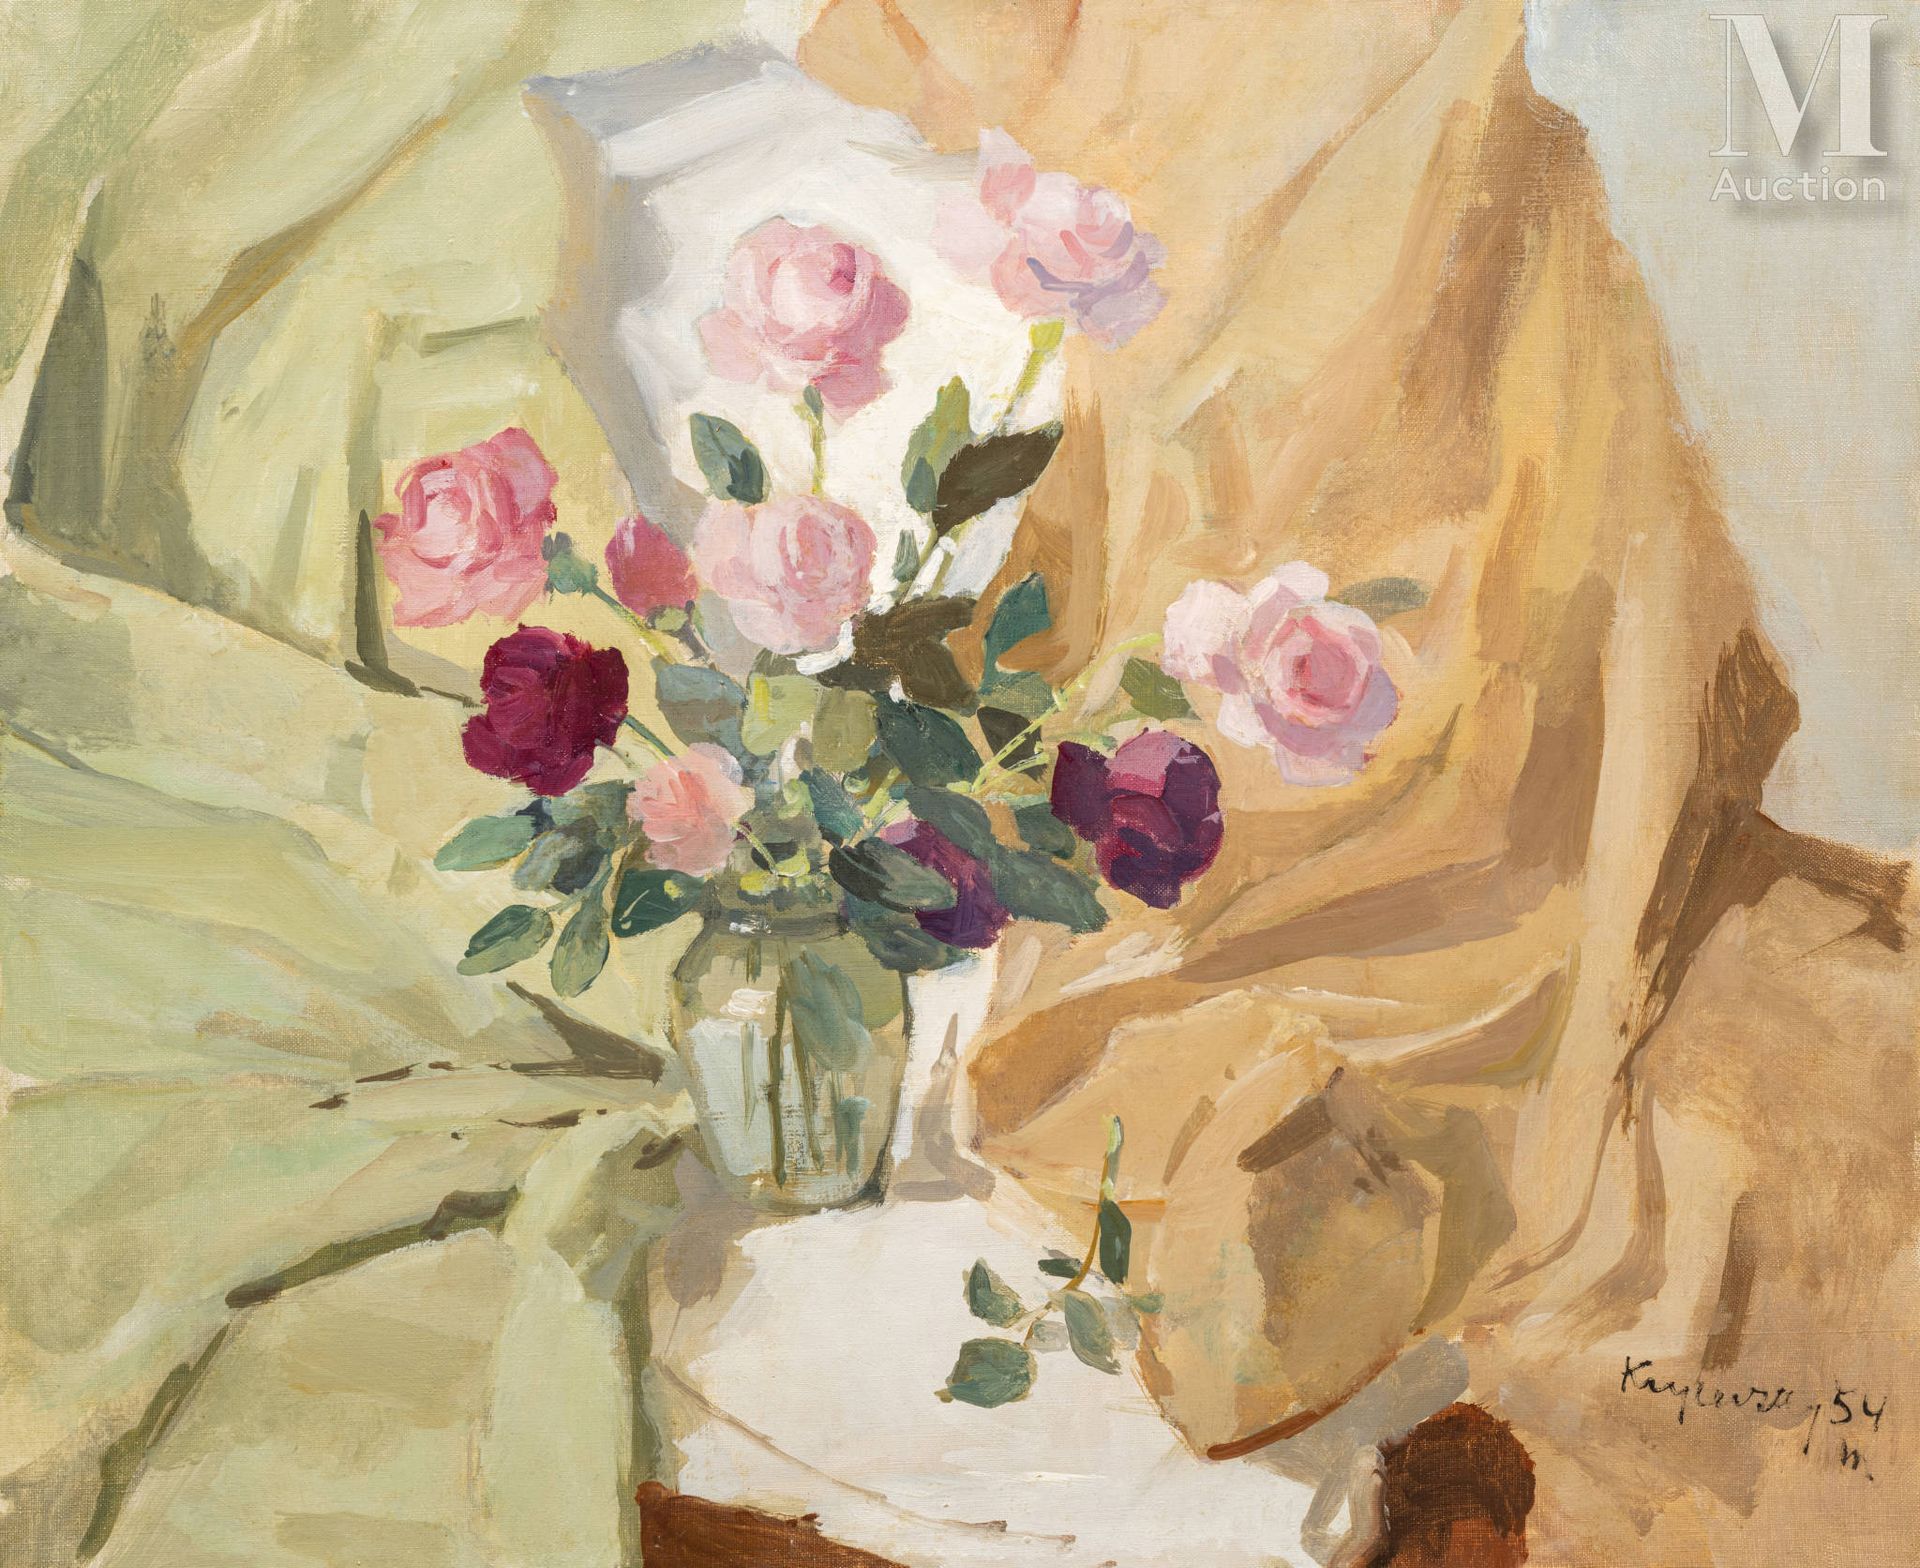 Nicolas KRYCEVSKY (Kharkov 1898 - Paris 1961) Composición con un ramo de rosas

&hellip;